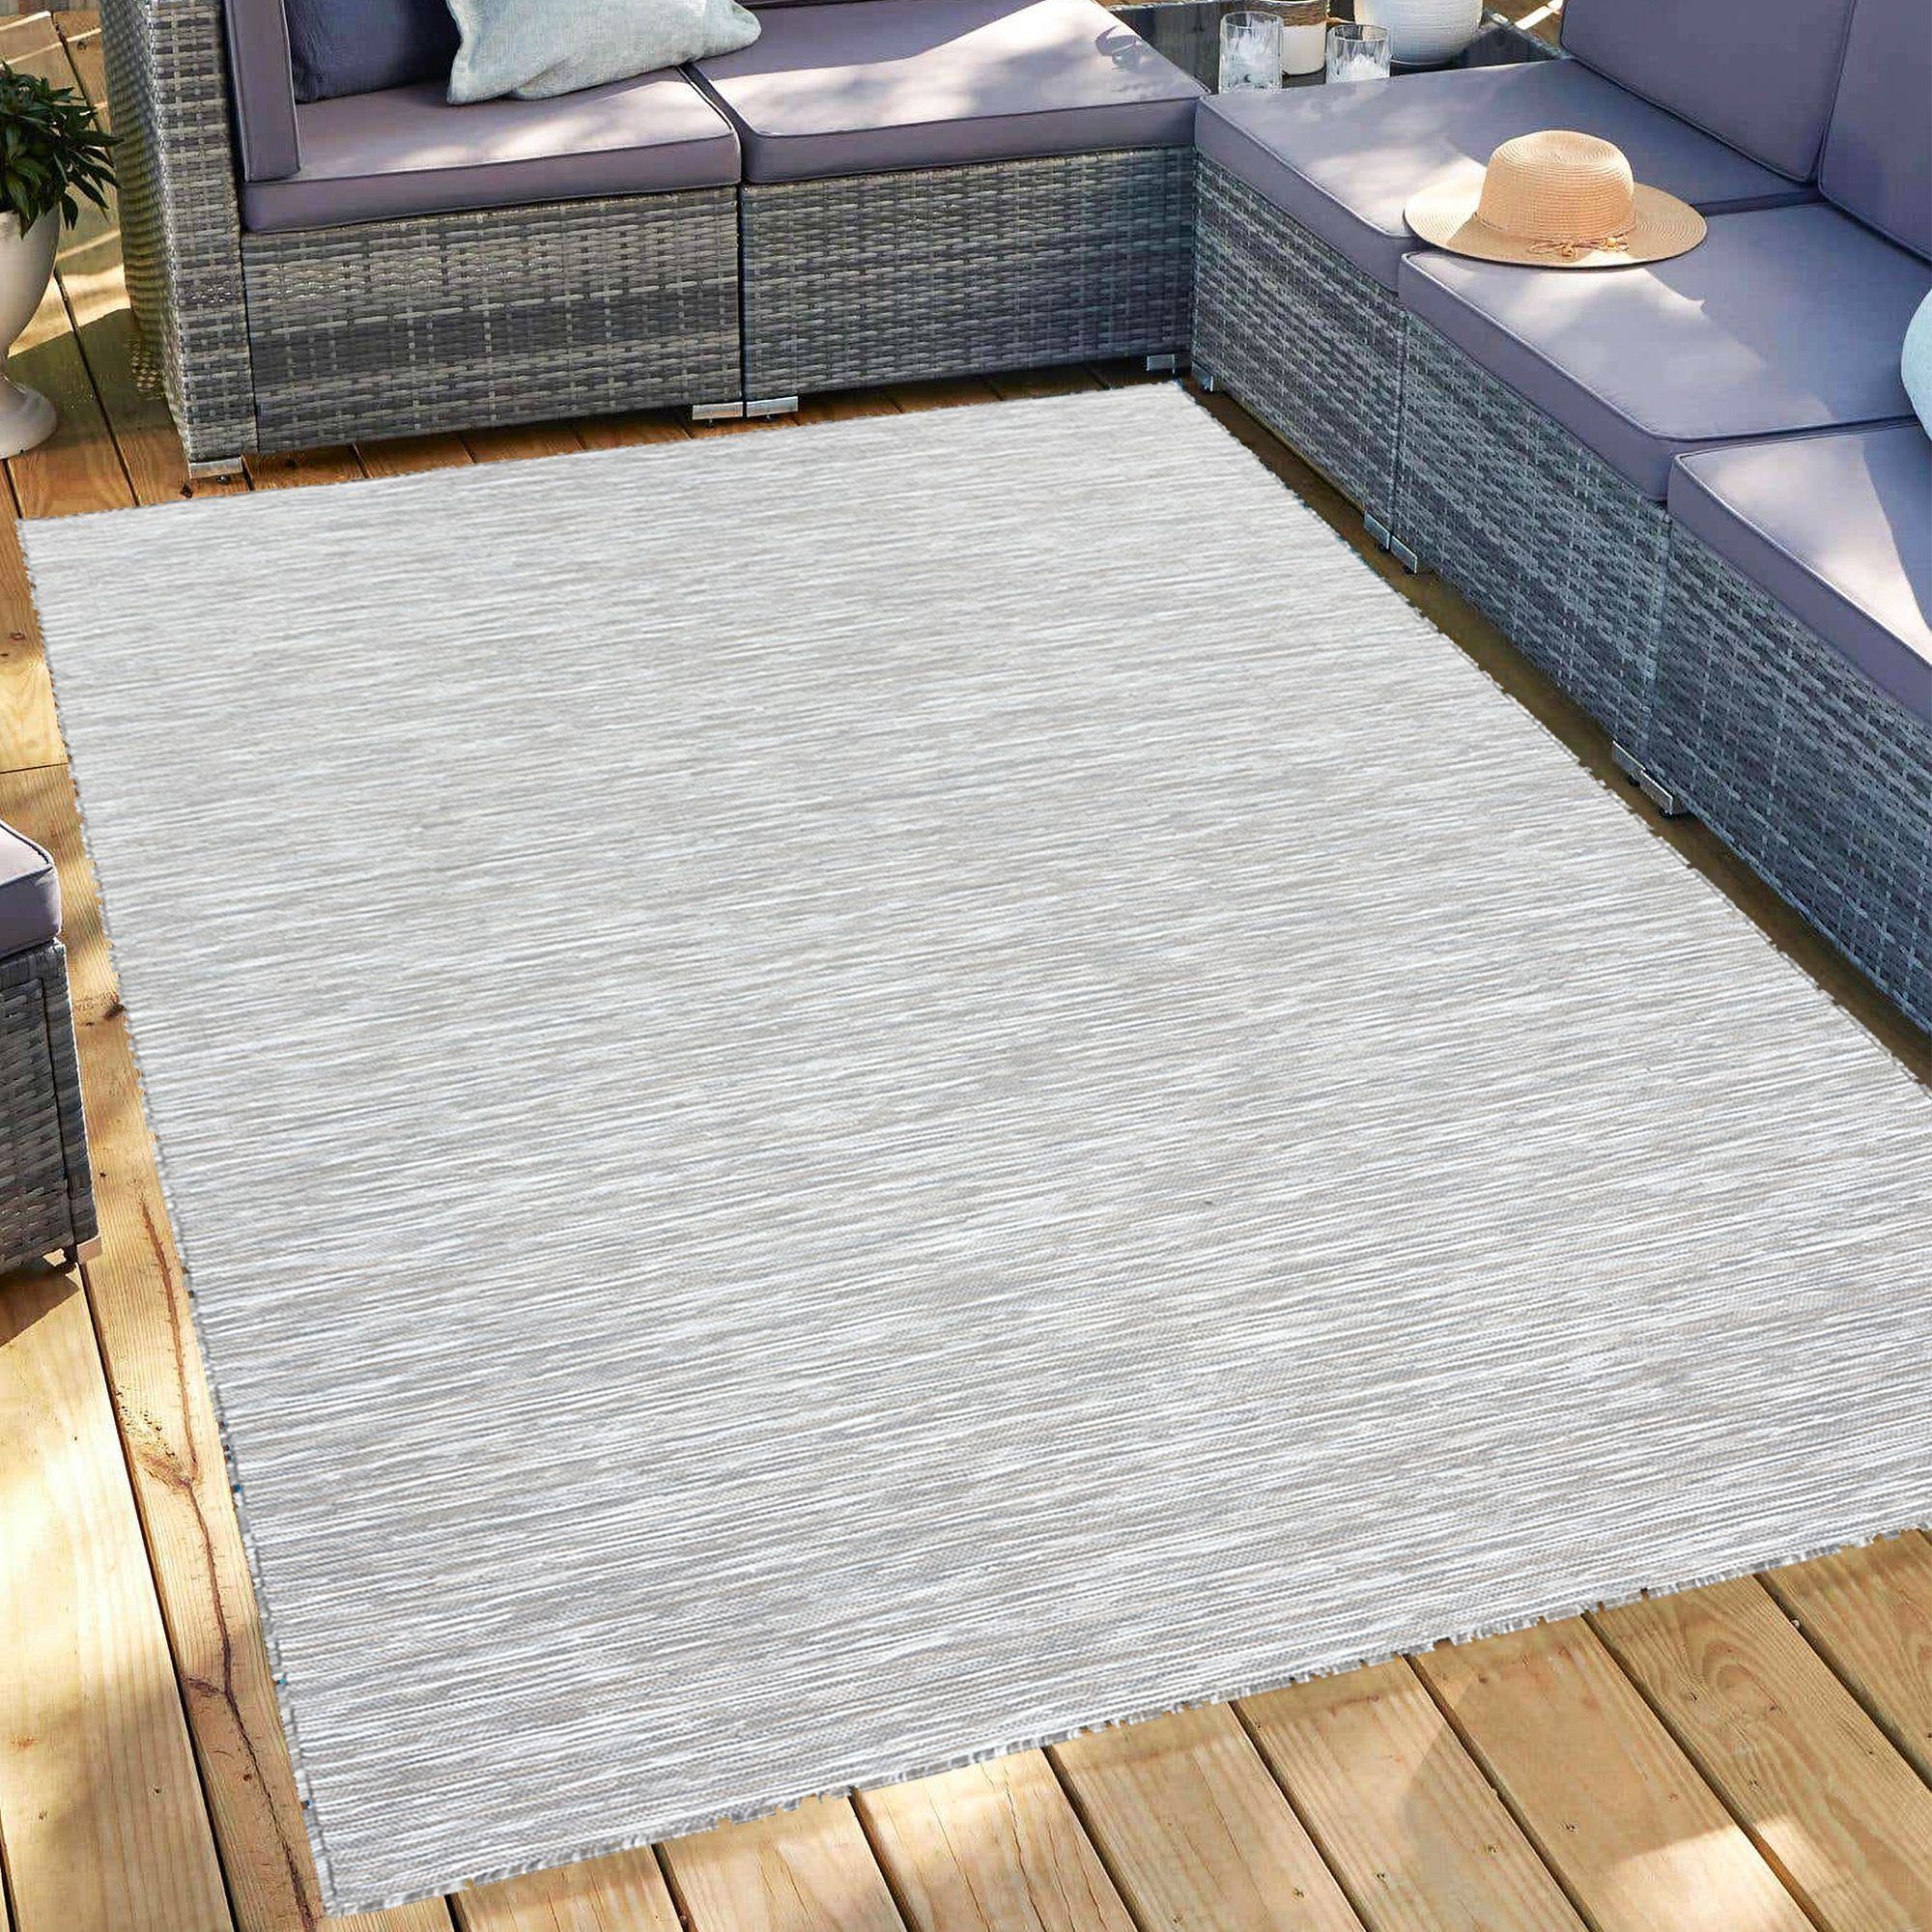 Outdoorteppich Gartenteppich Sisal-Look Teppich Indoor Outdoorteppich, Miovani Taupe